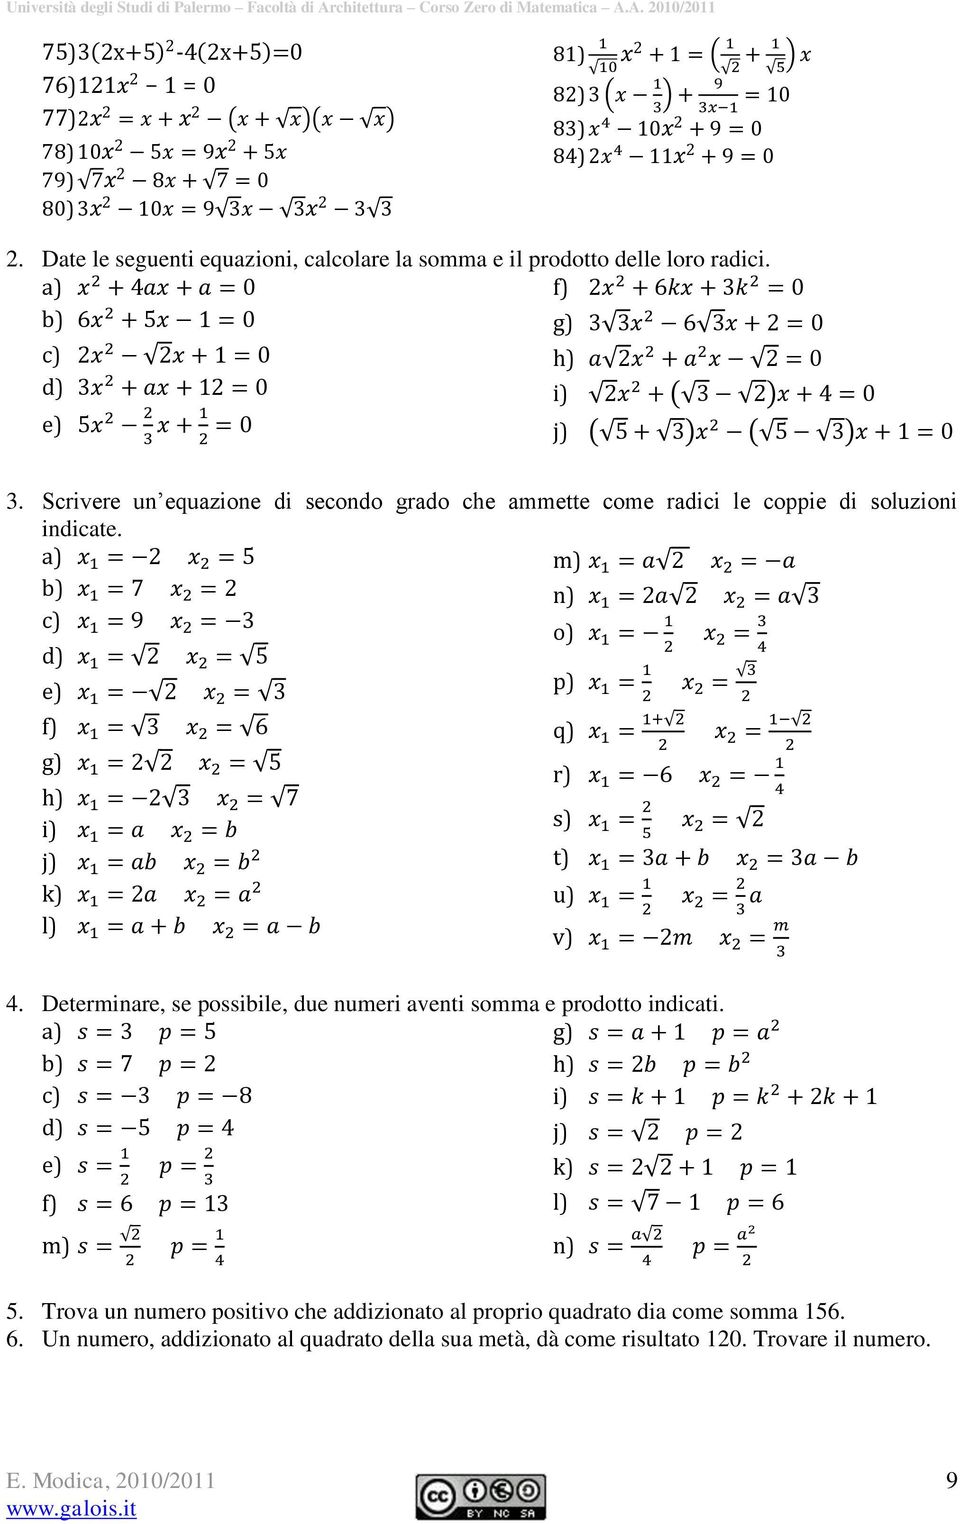 Scrivere un equazione di secondo grado che ammette come radici le coppie di soluzioni indicate. a) m) b) n) c) o) d) e) p) f) g) h) i) j) k) l) 4.